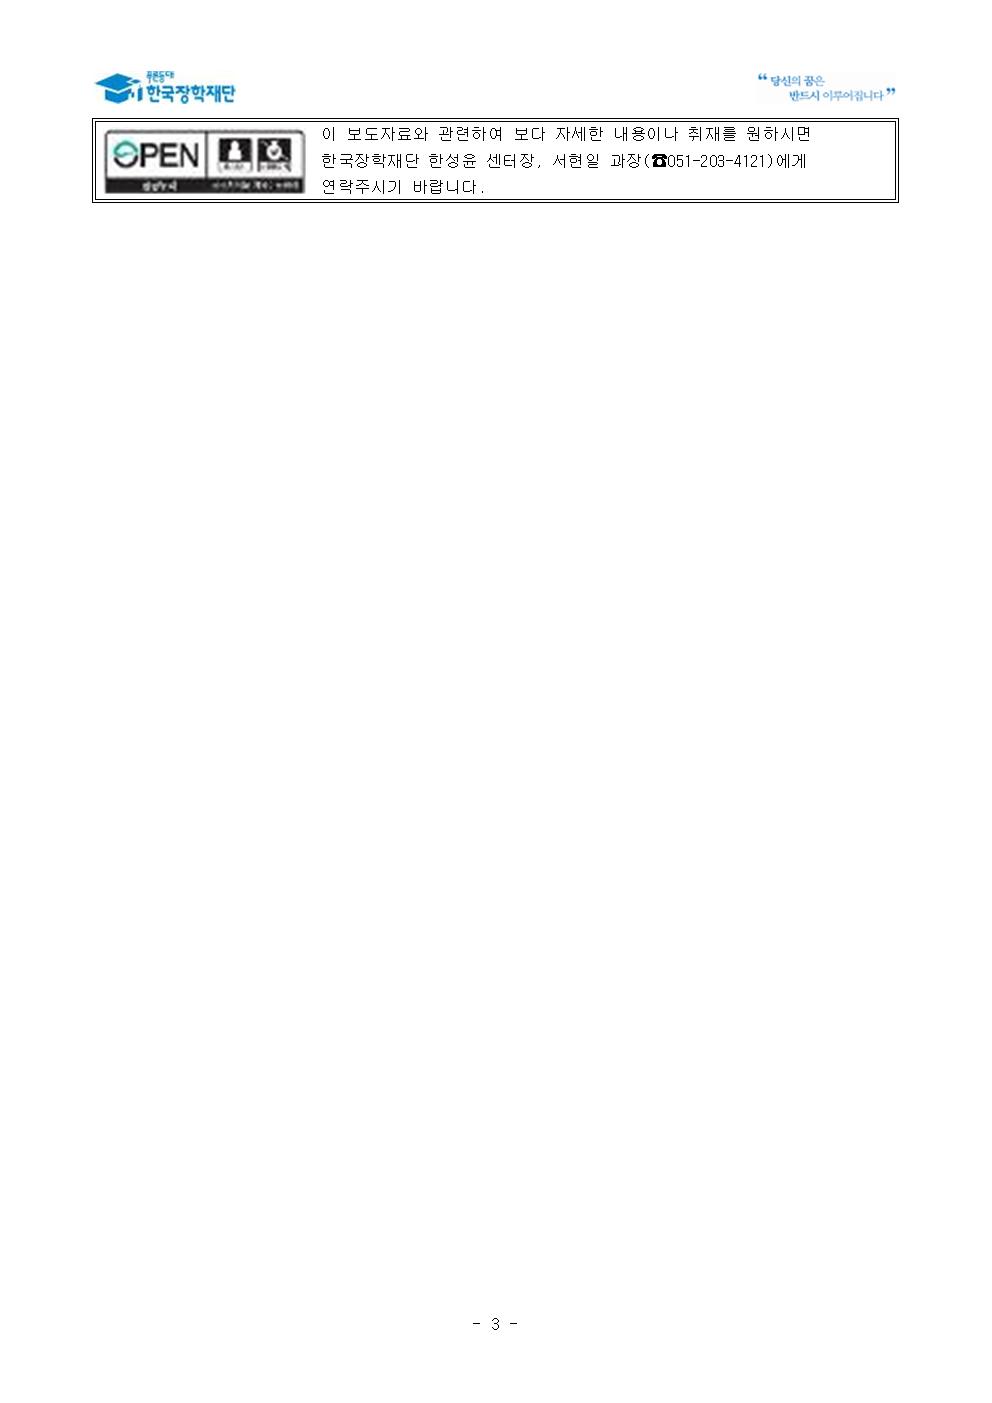 02-18(화)[보도자료] 한국장학재단, 부산광역시와 대학생 창업 촉진을 위한 업무협약 체결003.jpg